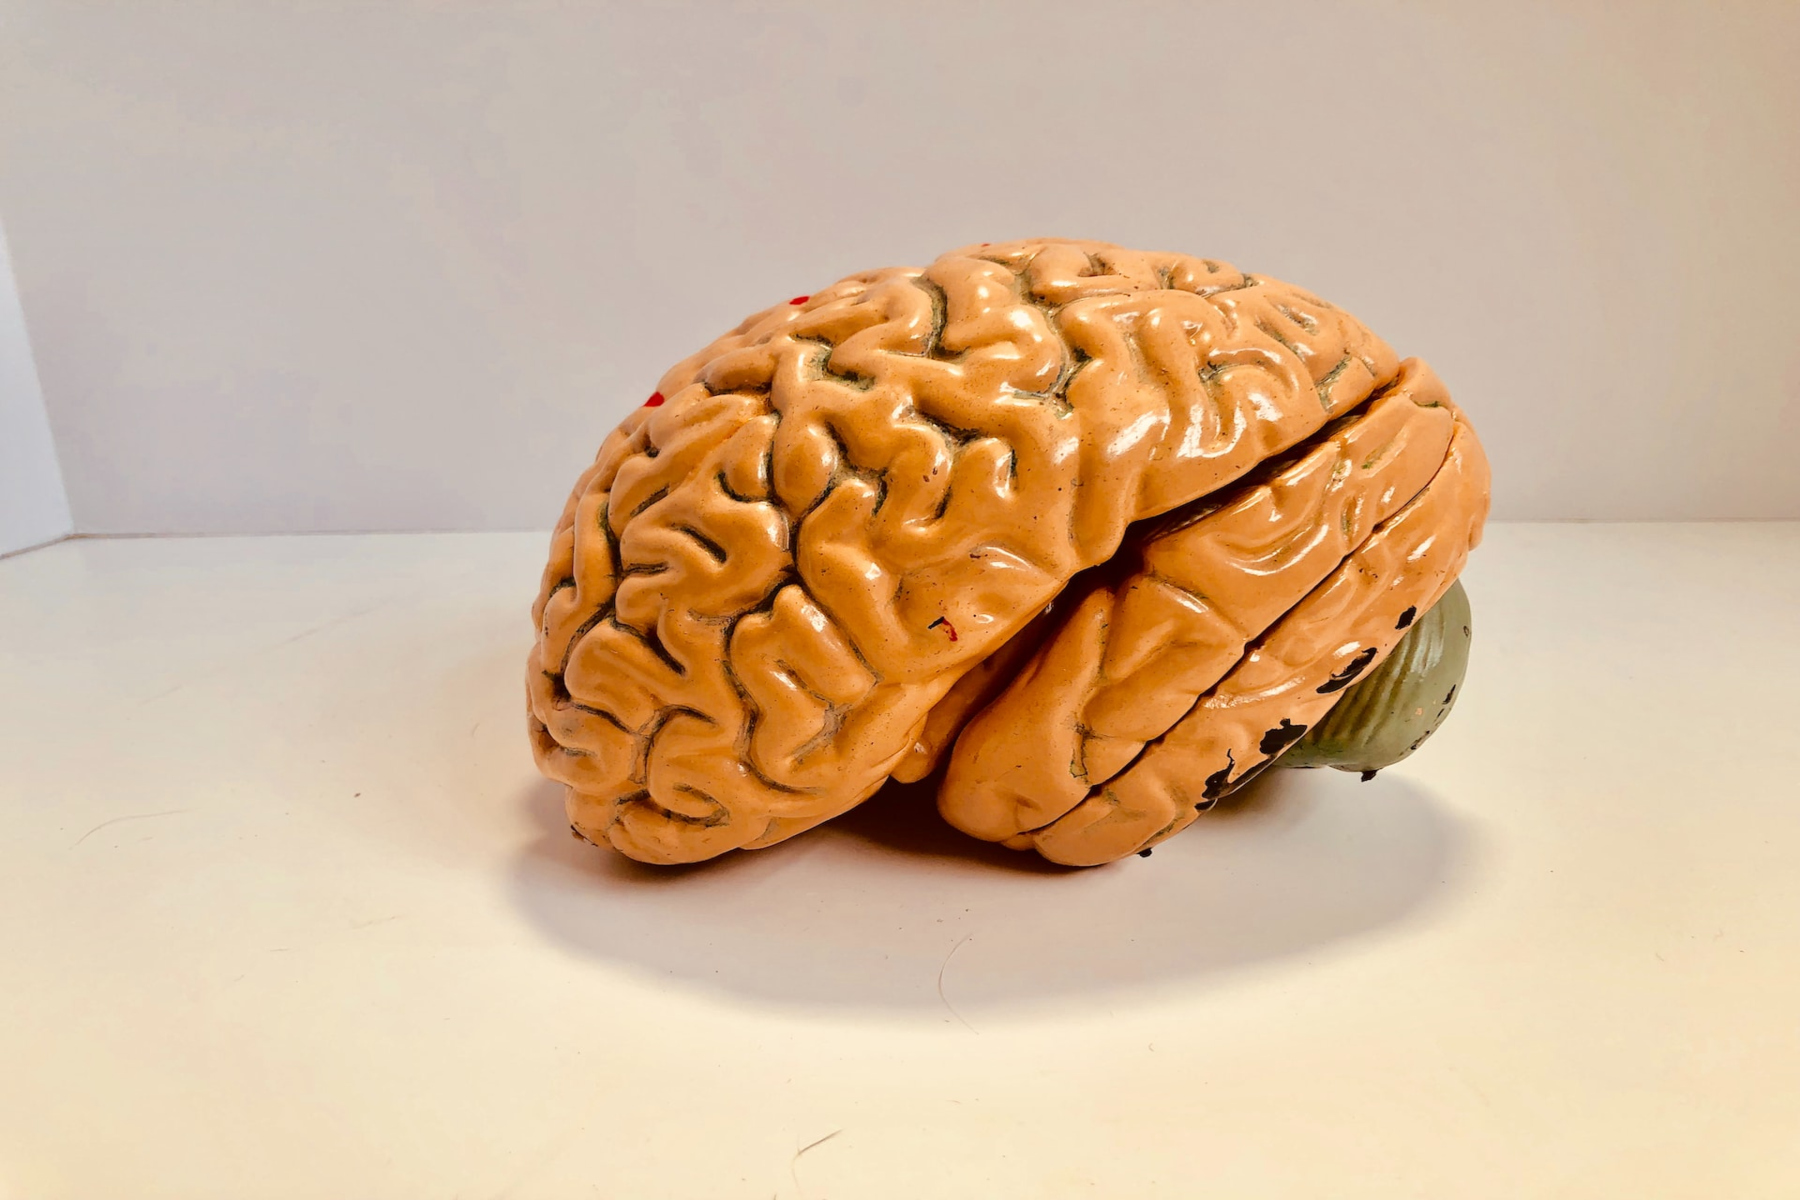 Μελέτη: Ο άνθρωπος σήμερα παράγει περισσότερους εγκεφαλικούς νευρώνες από τους Νεάντερταλ